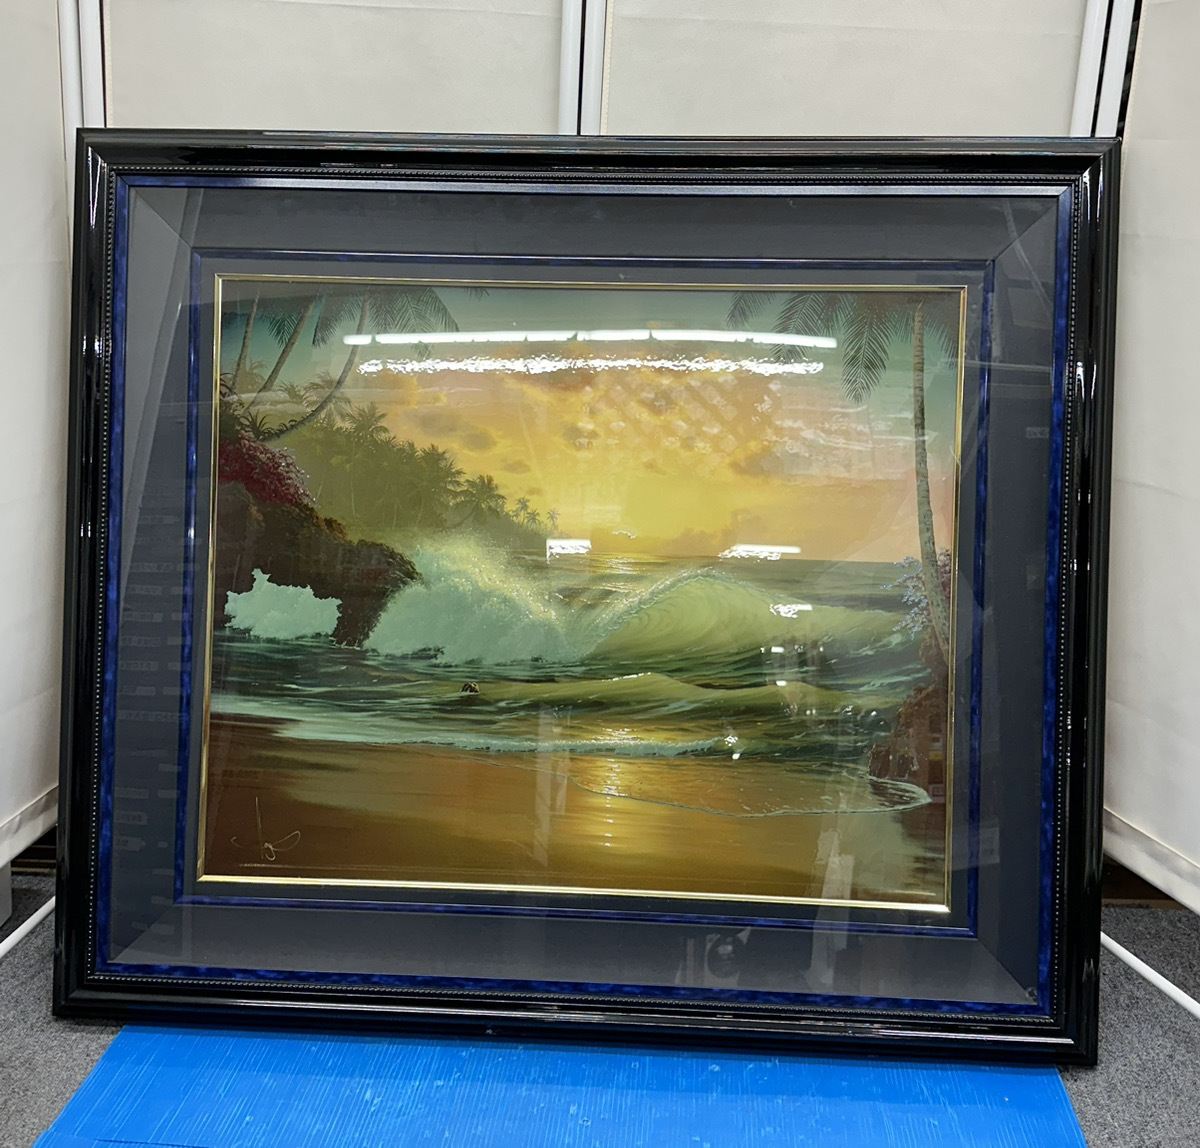 ●油画版画 约翰·艾尔霍格 约翰·艾尔霍格 永恒的海洋自然风景 大海日落 签名 无保证 按原样交付 存储物品, 绘画, 油画, 自然, 山水画